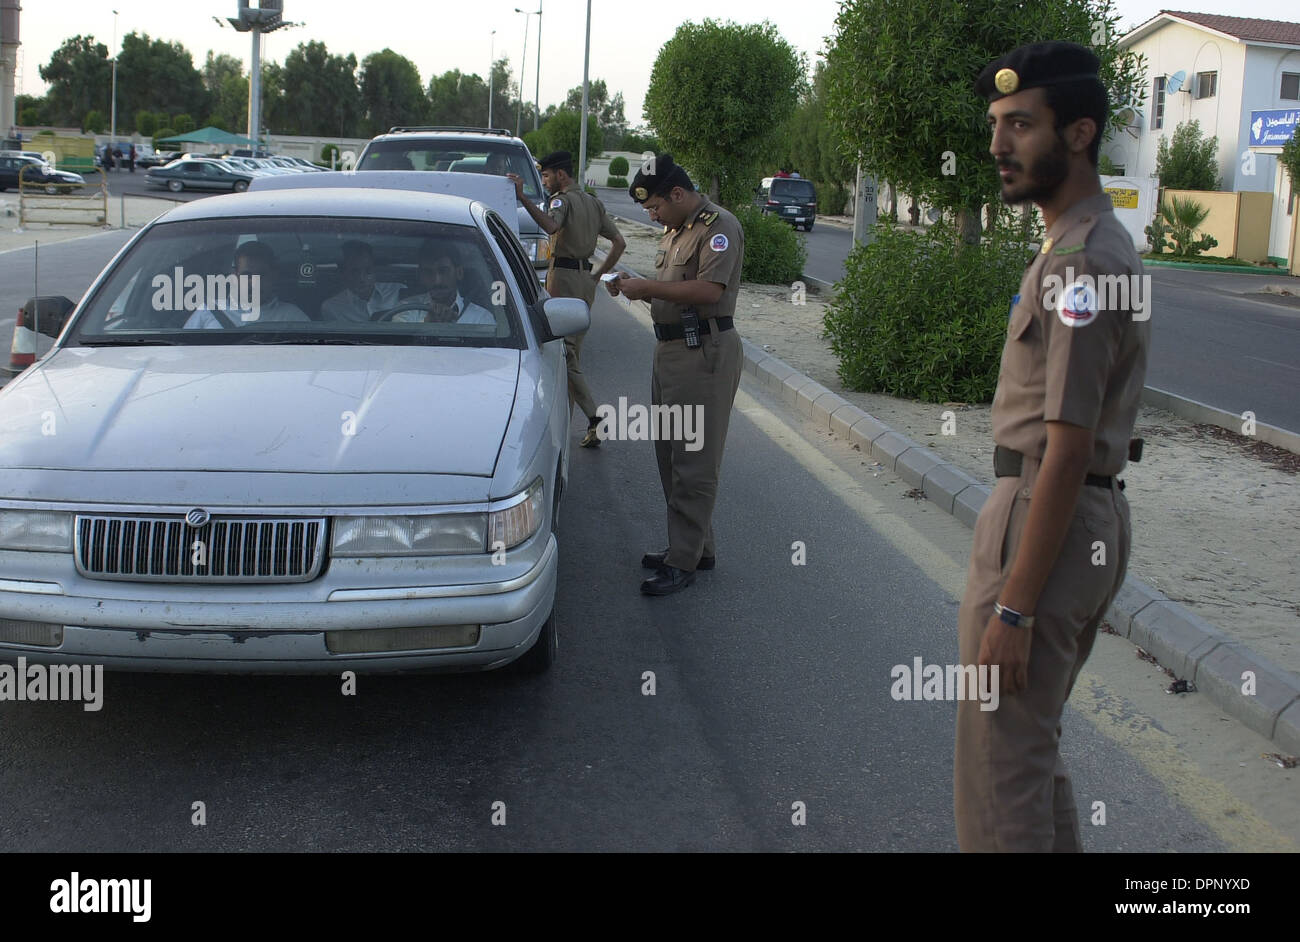 Al-Khobar, Arabia Saudita - Cooperazione di polizia dal Ministero degli Interni interrompere la ricerca auto cercando gli estremisti e controllo delle licenze. Foto Stock